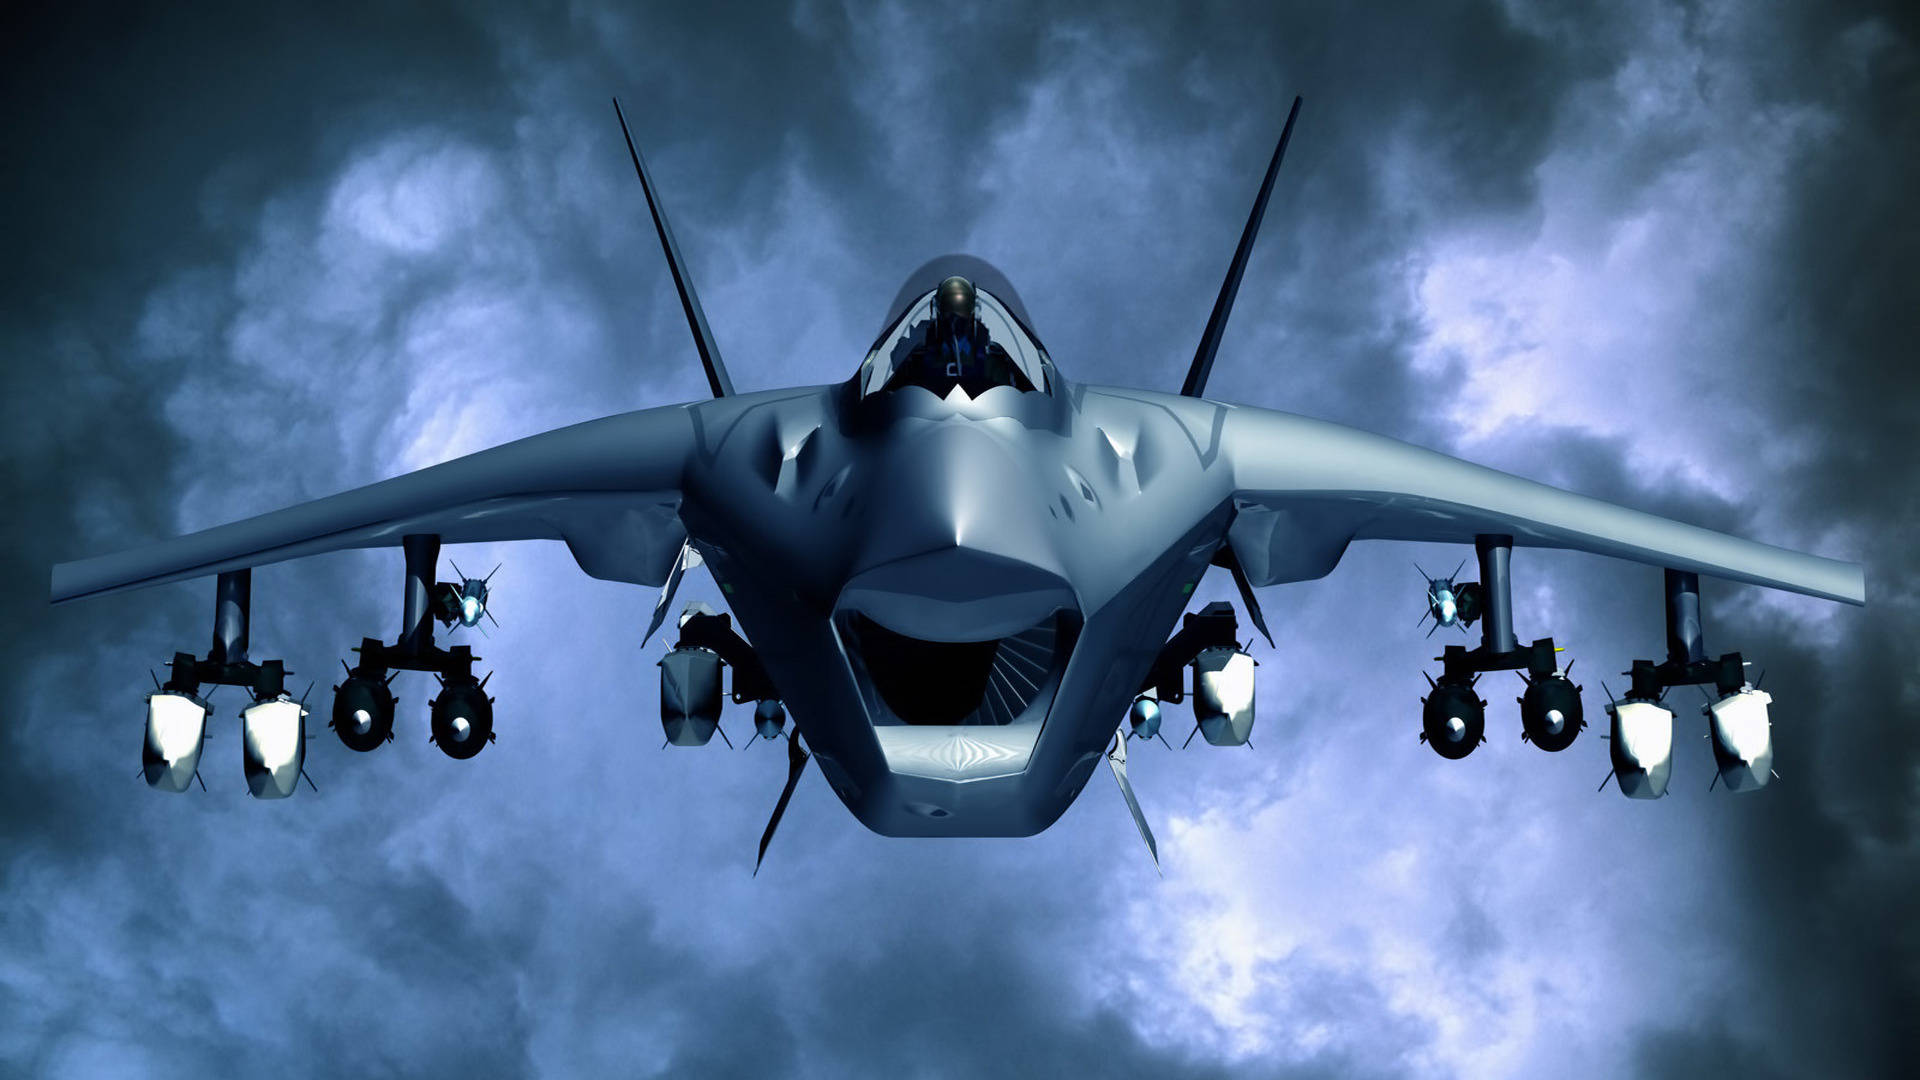 Den Amerikanske luftvåben fører vejen med sin militære jet superpower-billede. Wallpaper